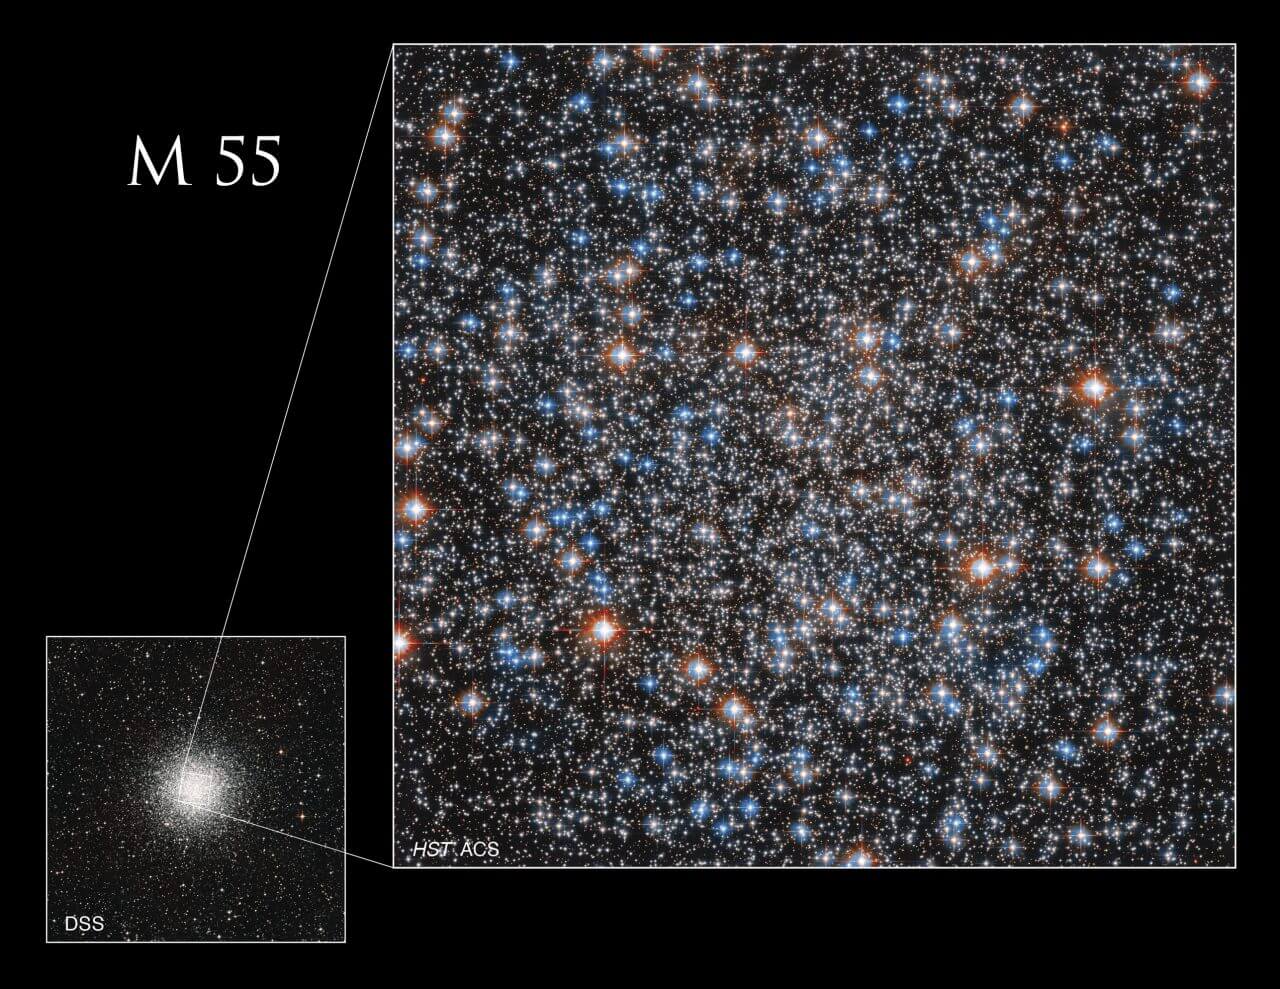 【▲ 地上の望遠鏡で撮影されたM55の全体像（左下）を使って、ハッブル宇宙望遠鏡で観測された領域（右）の位置を示した画像（Credit: NASA, ESA, A. Sarajedini (Florida Atlantic University), M. Libralato (STScI, ESA, JWST), and Digital Sky Survey; Image Processing: Gladys Kober）】